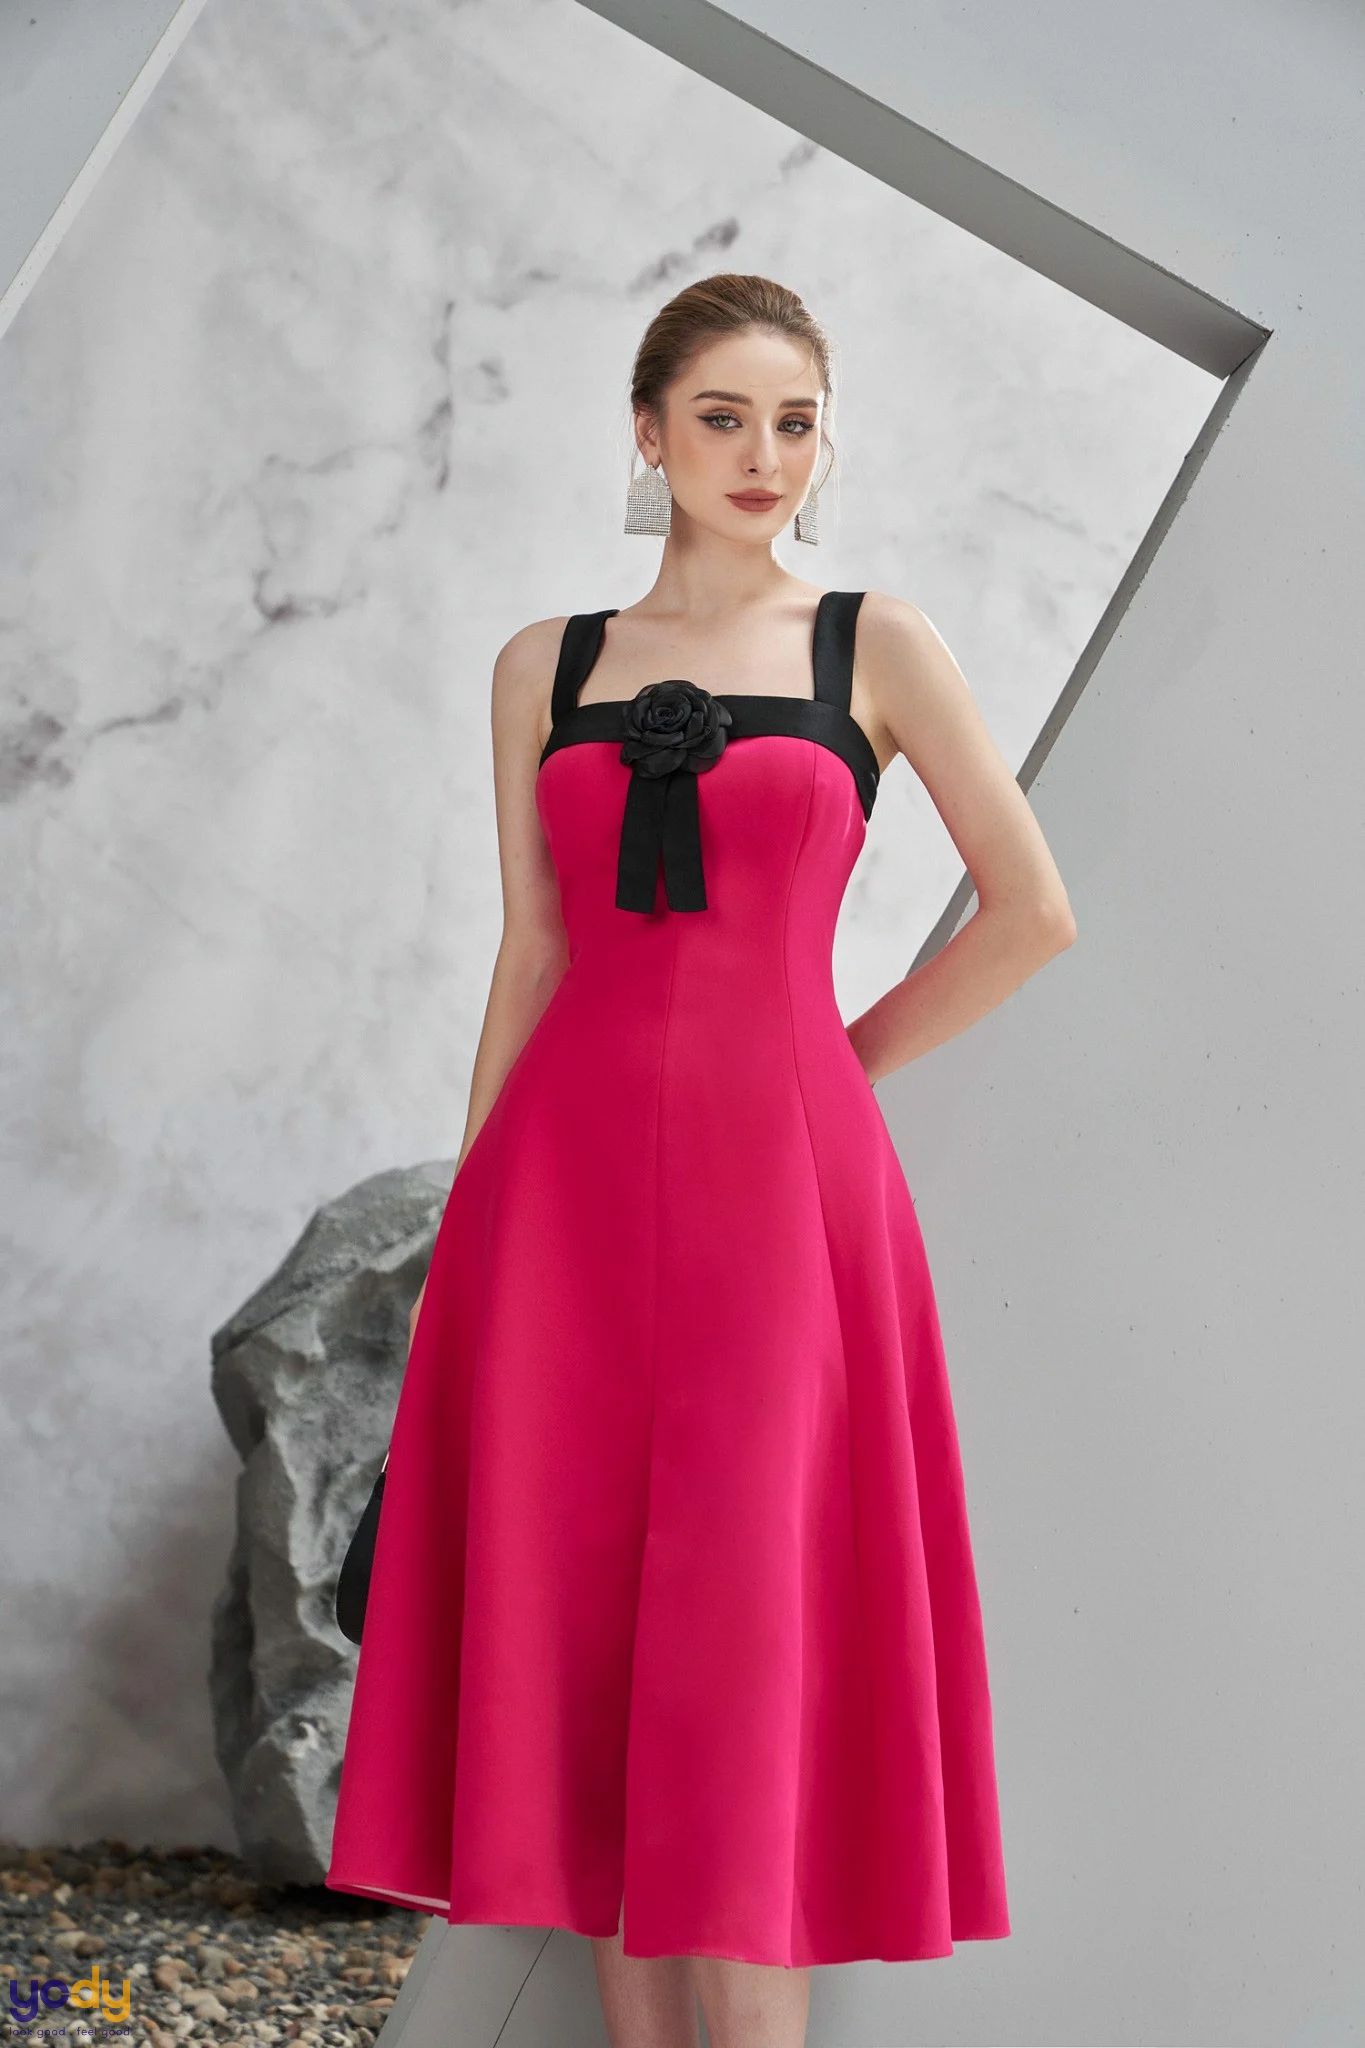 Quyến rũ cùng các mẫu váy hồng cánh sen thời trang HOT TREND